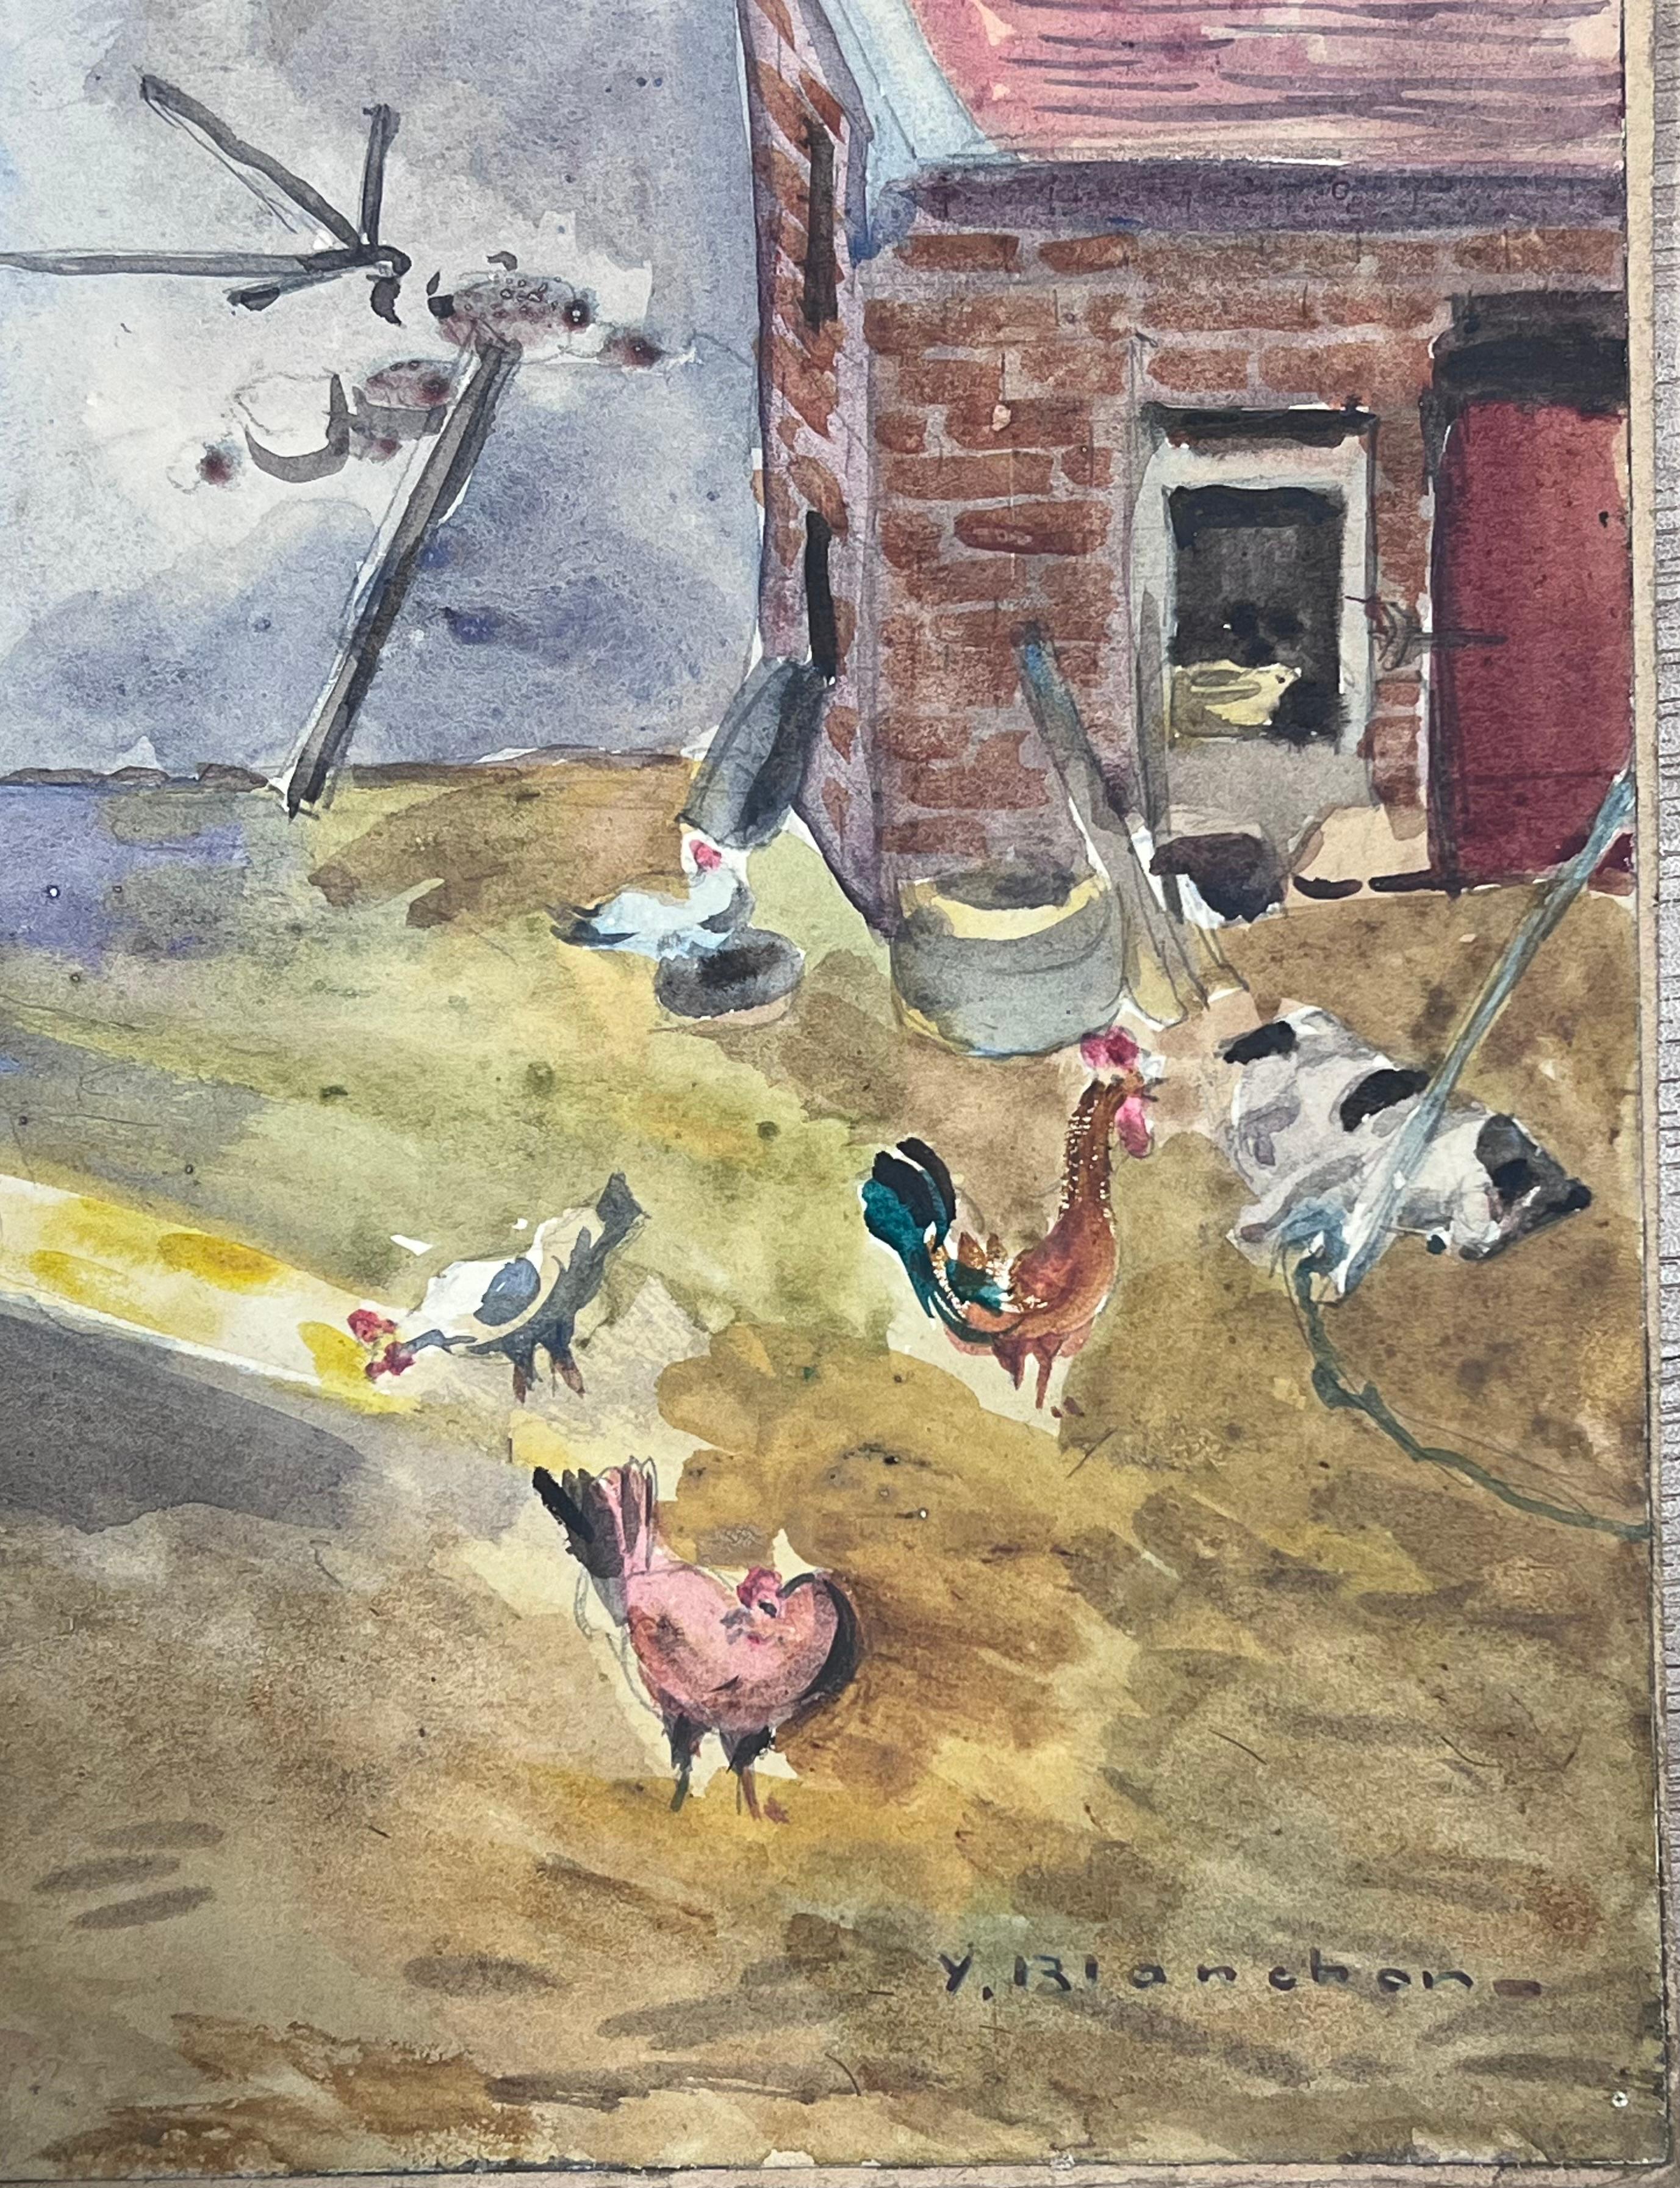 Acuarela de 1930 Paisaje francés Gallinas en el corral - Painting Impresionista de Y. Blanchon